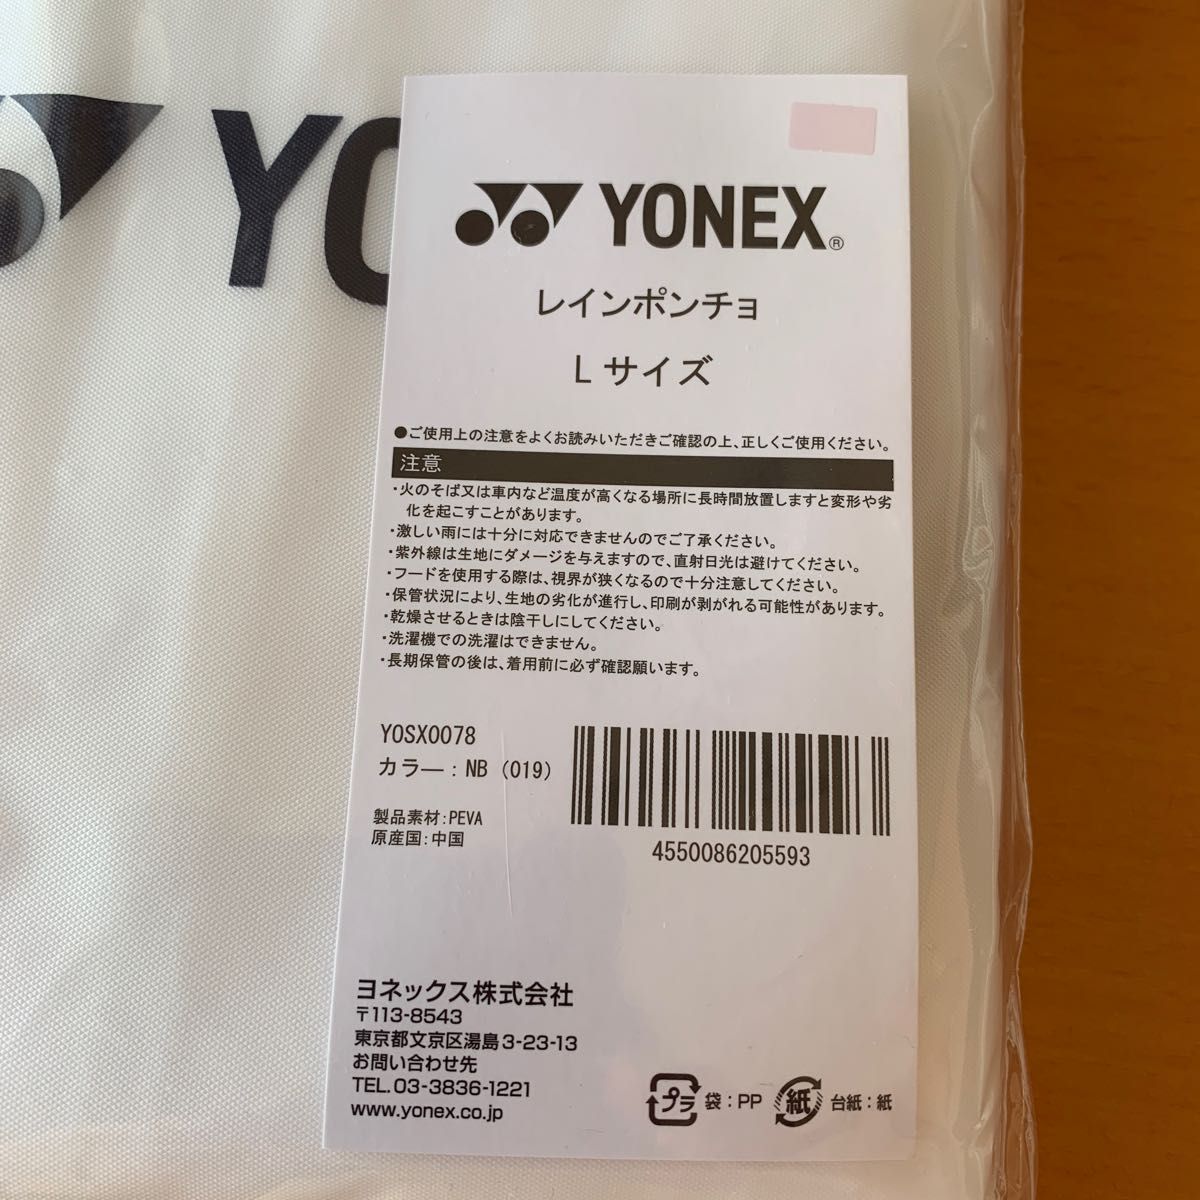 『大会限定』ヨネックスYONEX レインポンチョ(レインコート) Lサイズ